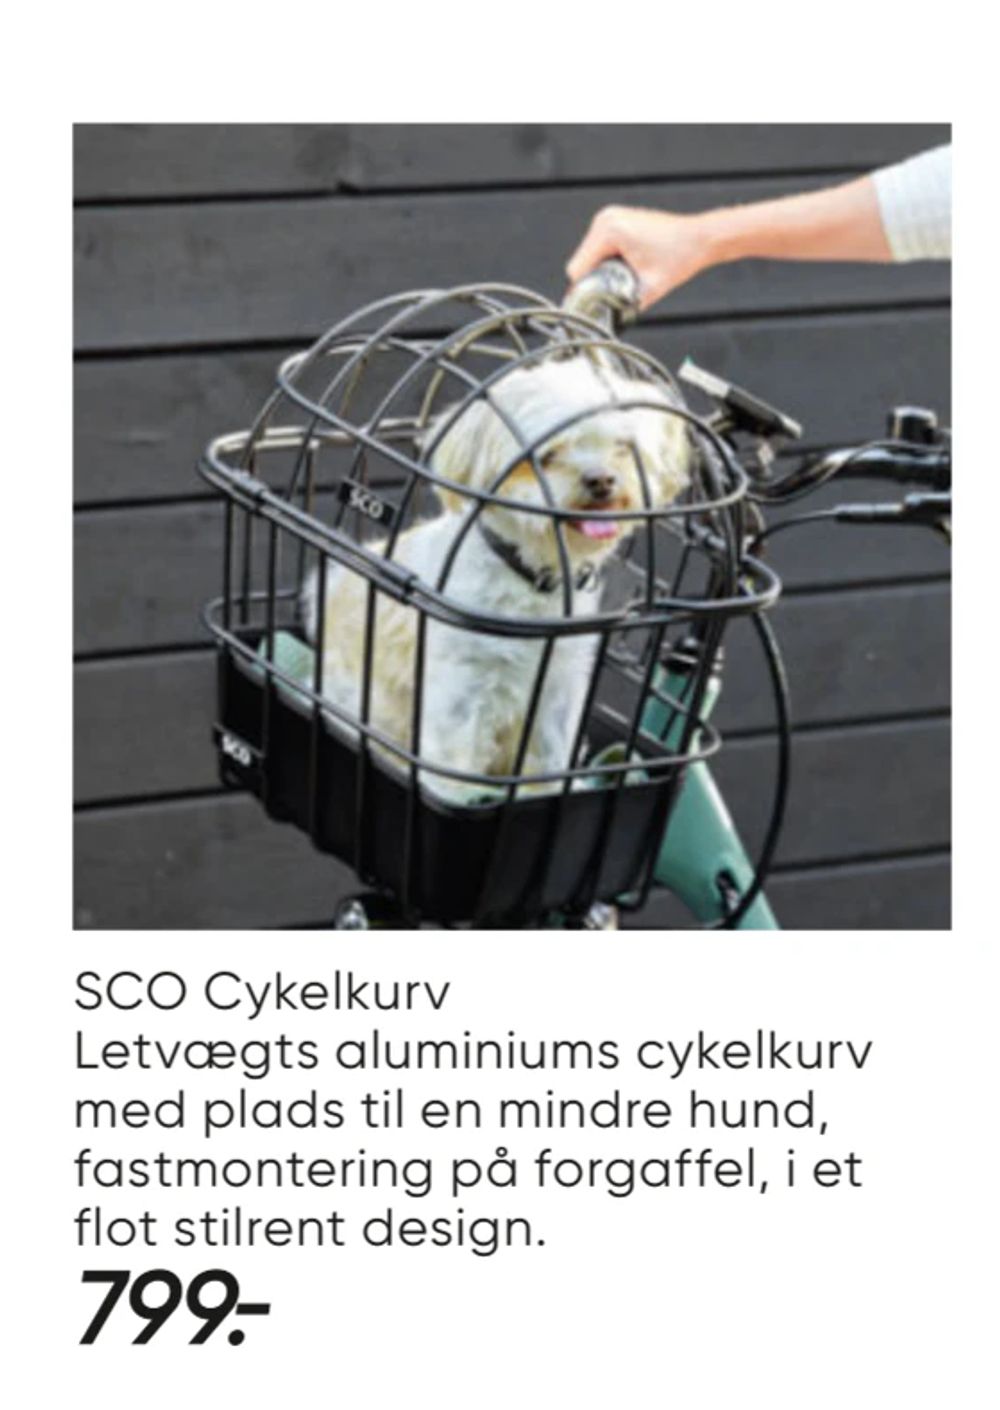 Tilbud på SCO Cykelkurv fra Bilka til 799 kr.